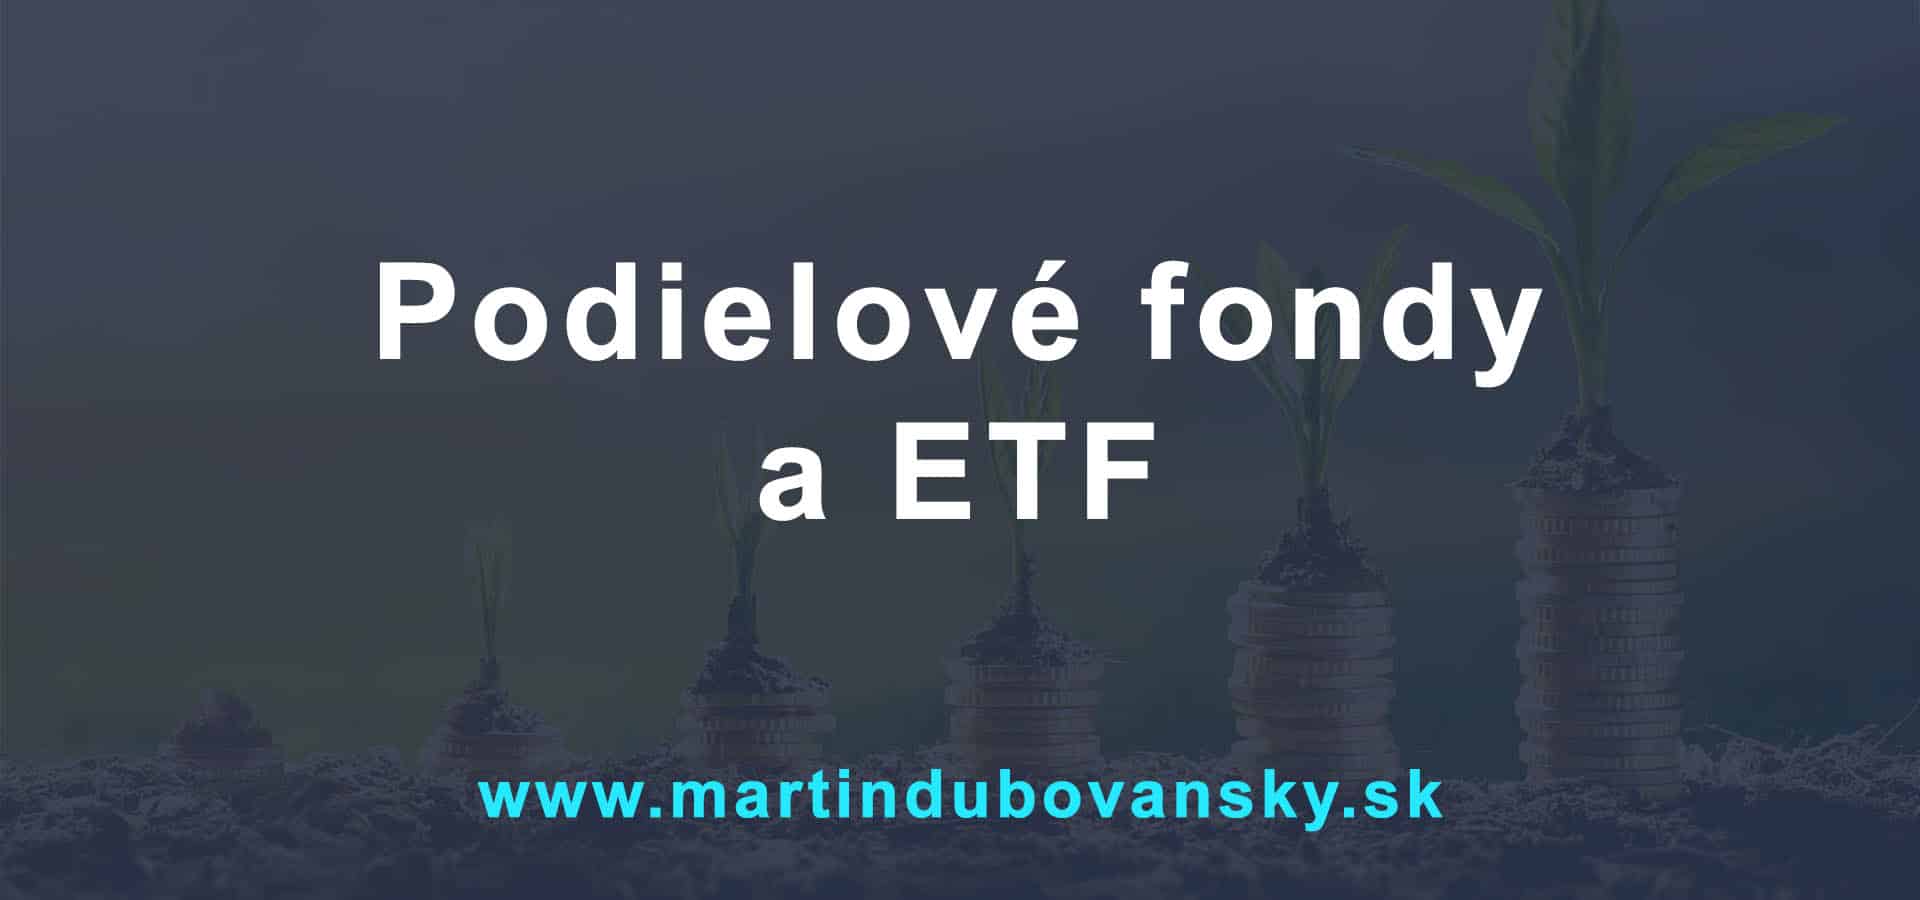 Podielové fondy a ETF